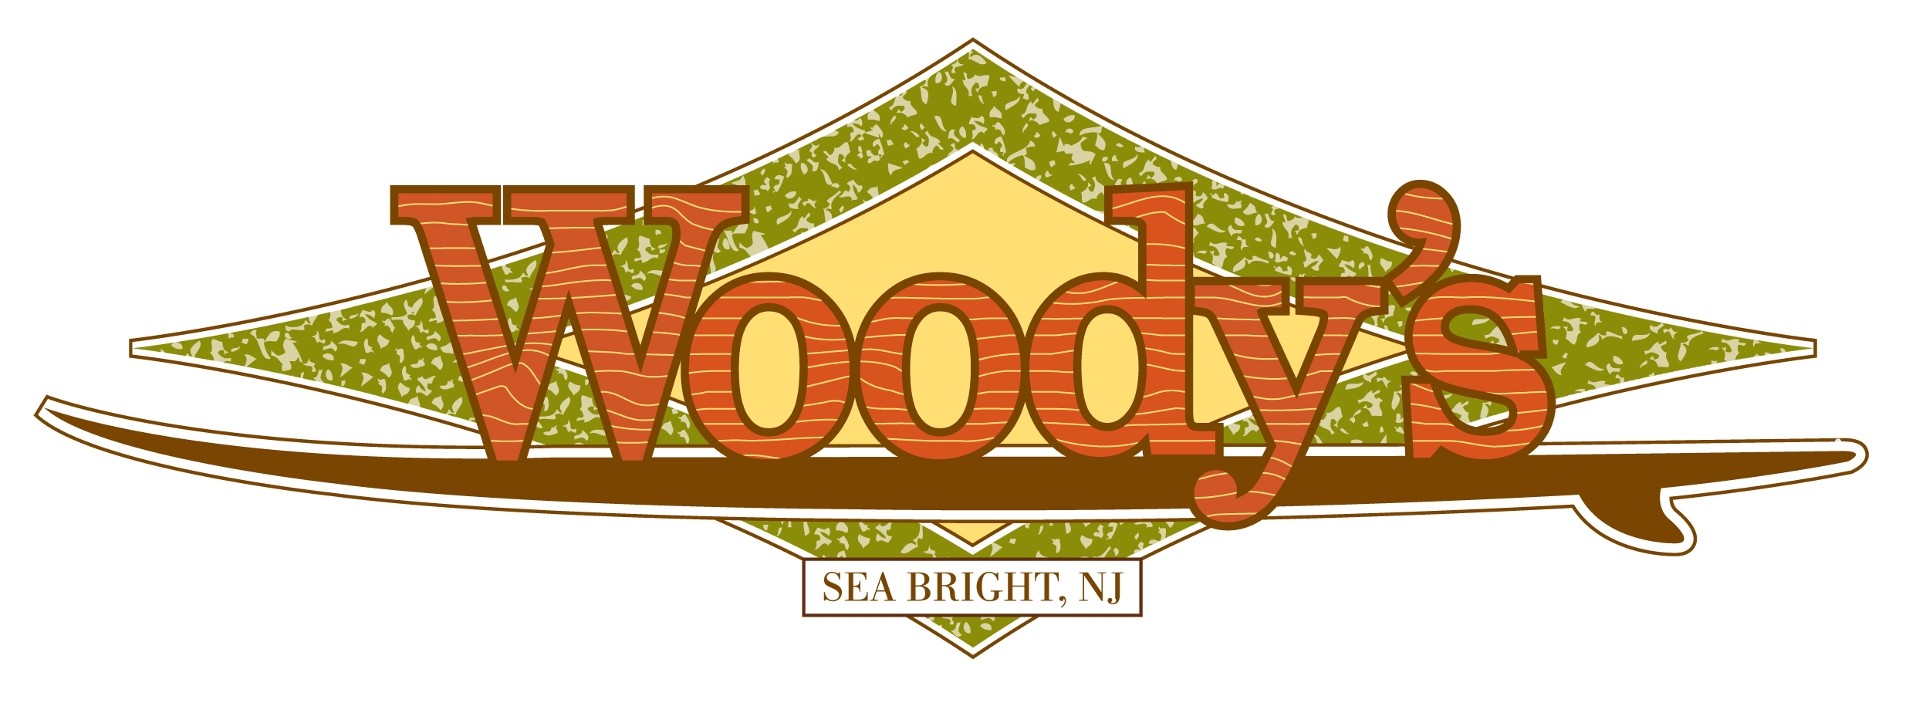 Woody's Ocean Grille Sea Bright